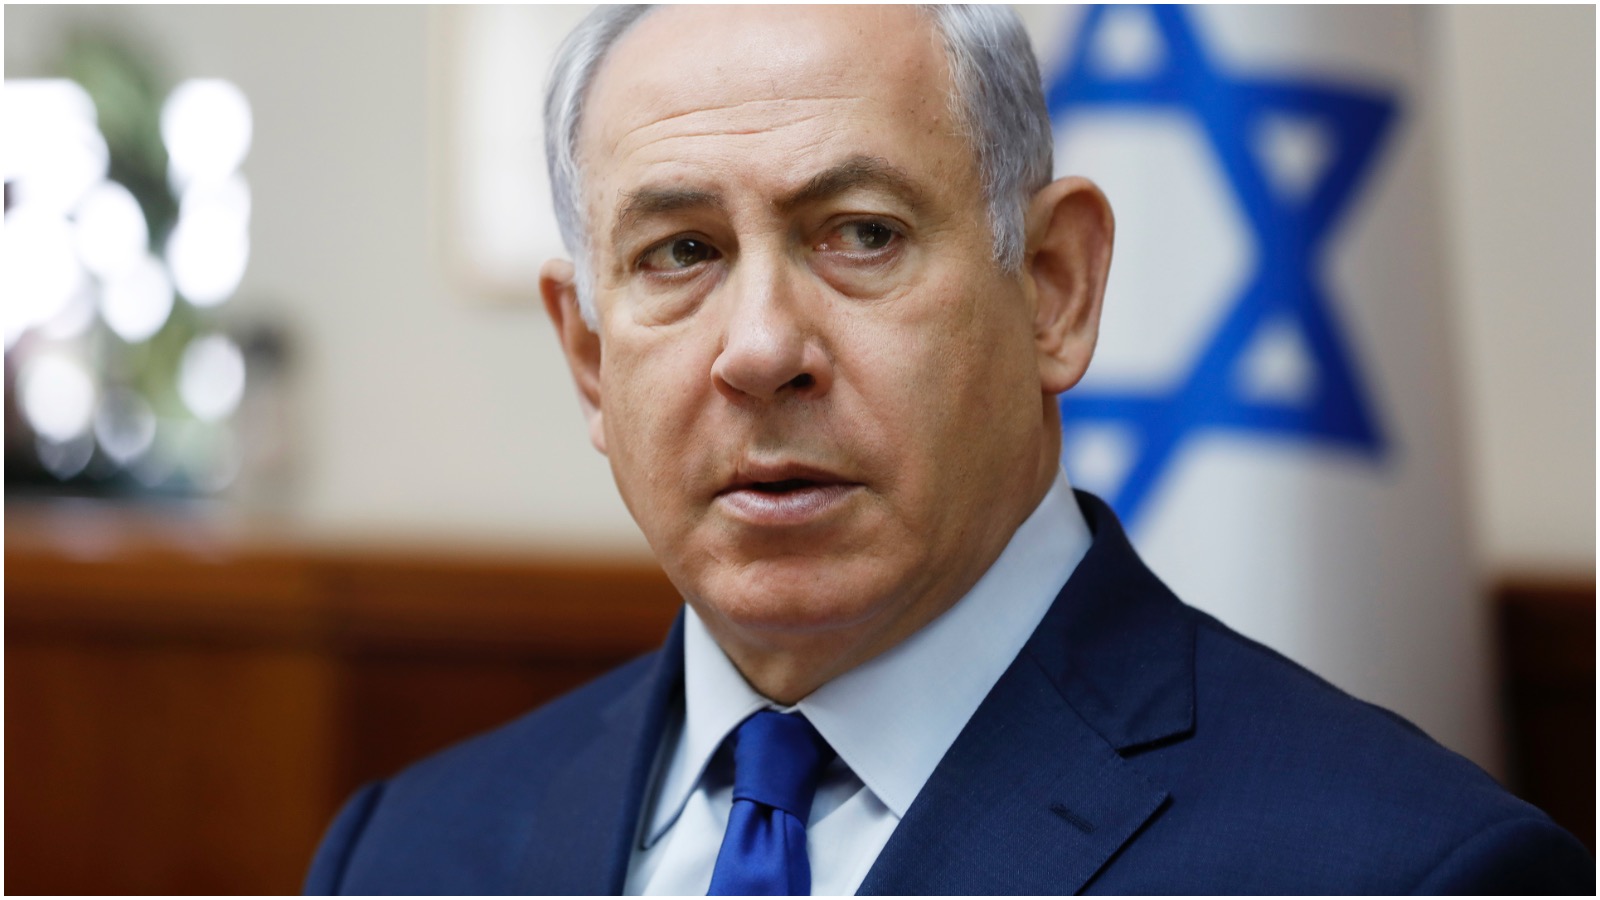 Eran Etzion om Israel og USA’s ambassade: “Det er Trump og Netanyahu på den ene side og resten af verden på den anden”